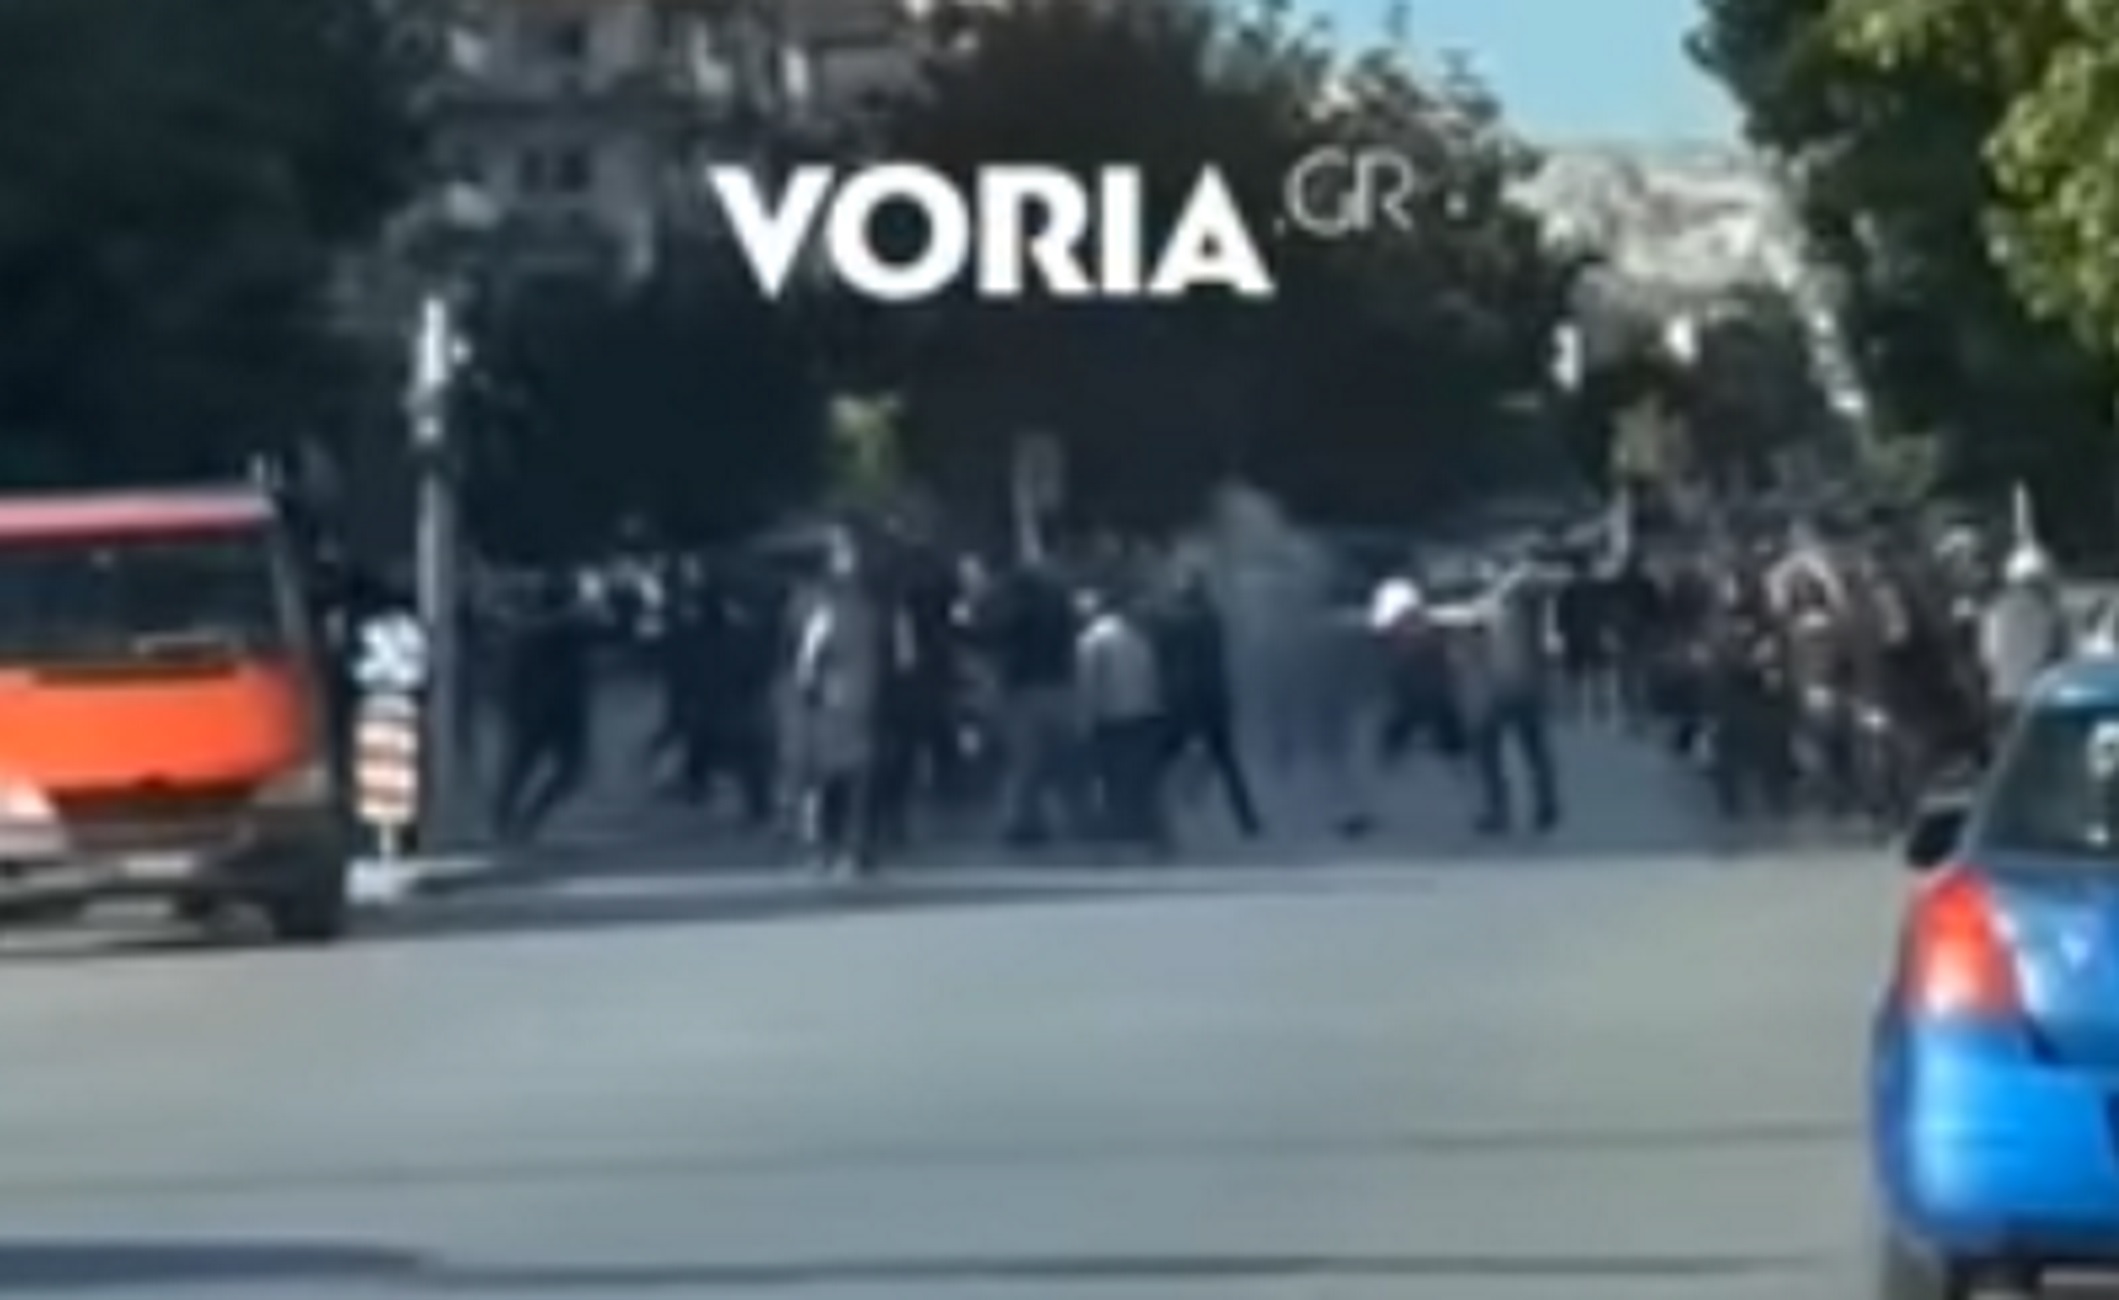 Θεσσαλονίκη: Νέο βίντεο από το οπαδικό επεισόδιο και τη μάχη των χούλιγκαν